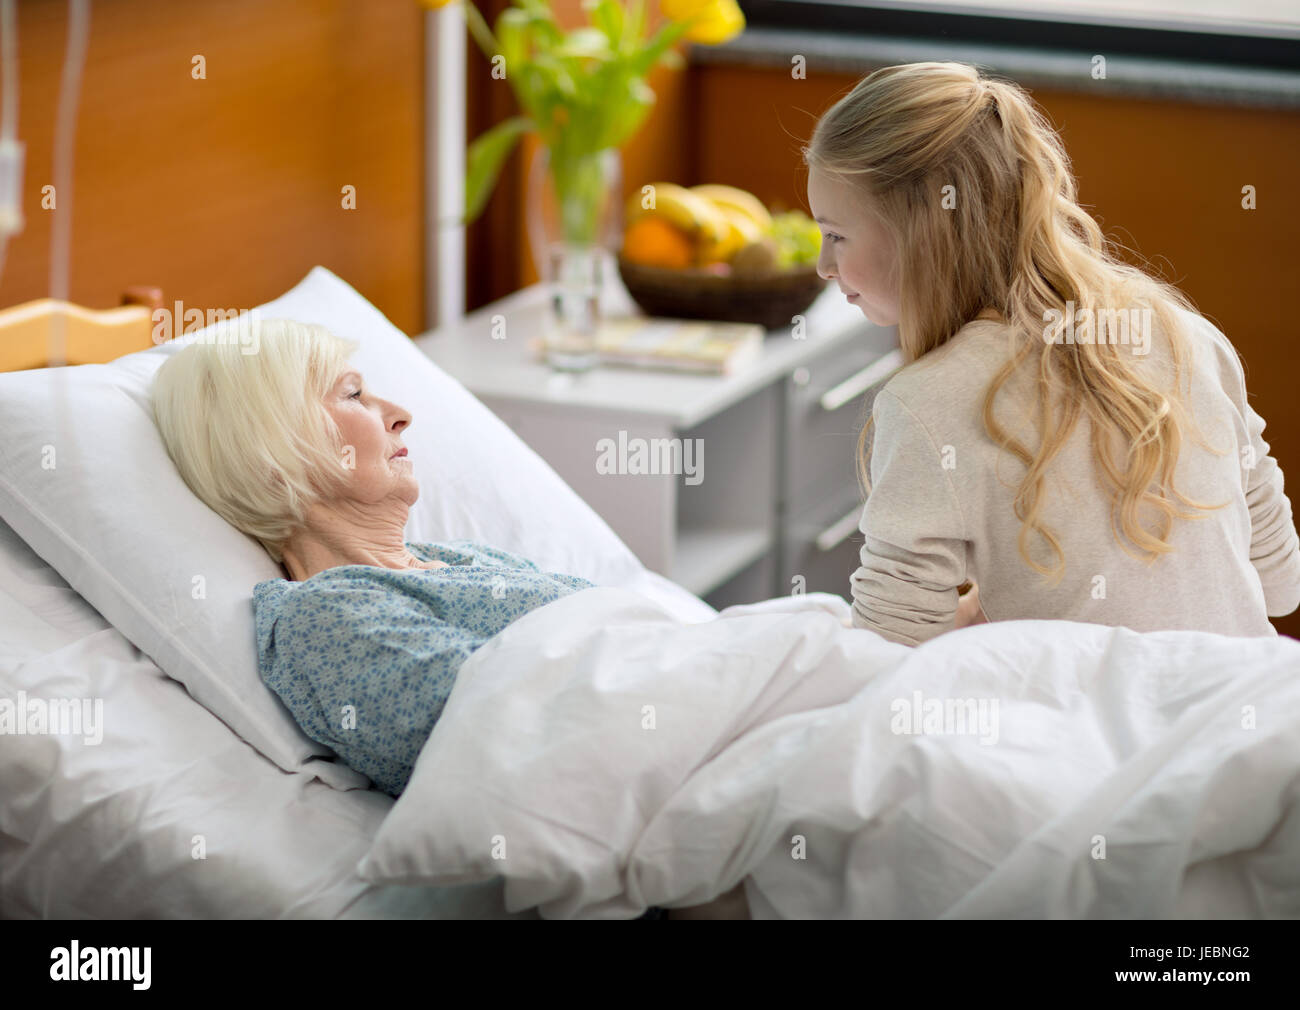 Навестить пациента. Навестил бабушку в больницей. Маиа в больнм.